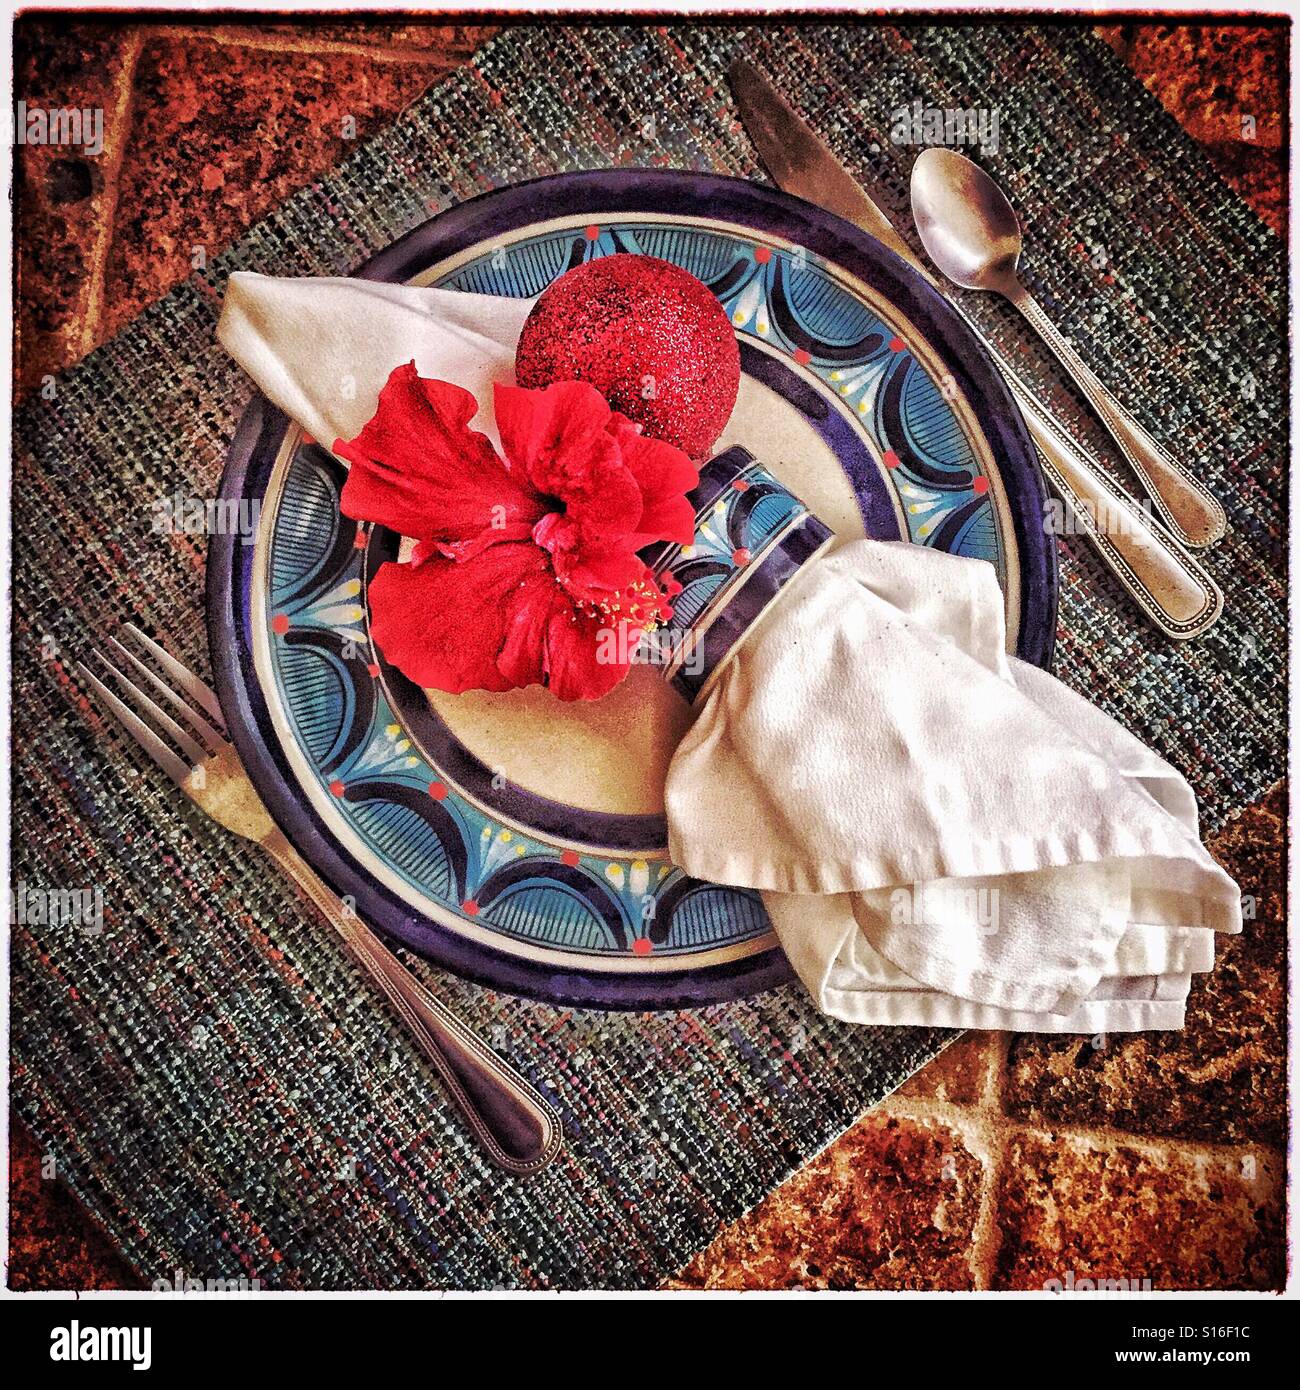 Ein Urlaub-Gedeck mit einer frischen roten Hibiskus Blume und ein glitzerndes rot Ornament in der Serviettenring auf einer lackierten Platte. Stockfoto